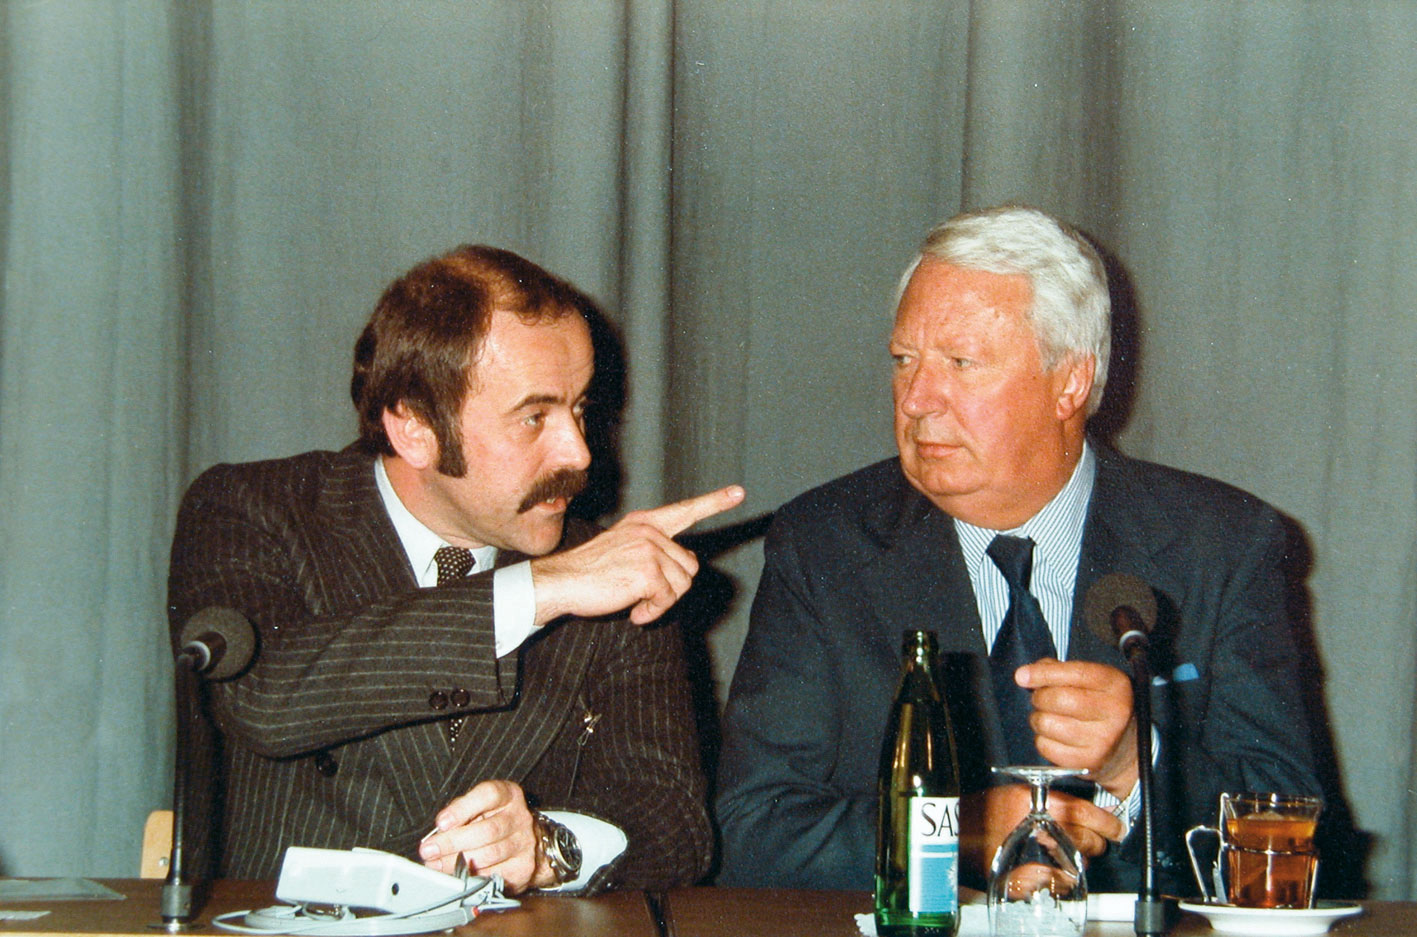 Rudolf L. Schreiber und Edward Heath auf dem European Management Symposium 1980